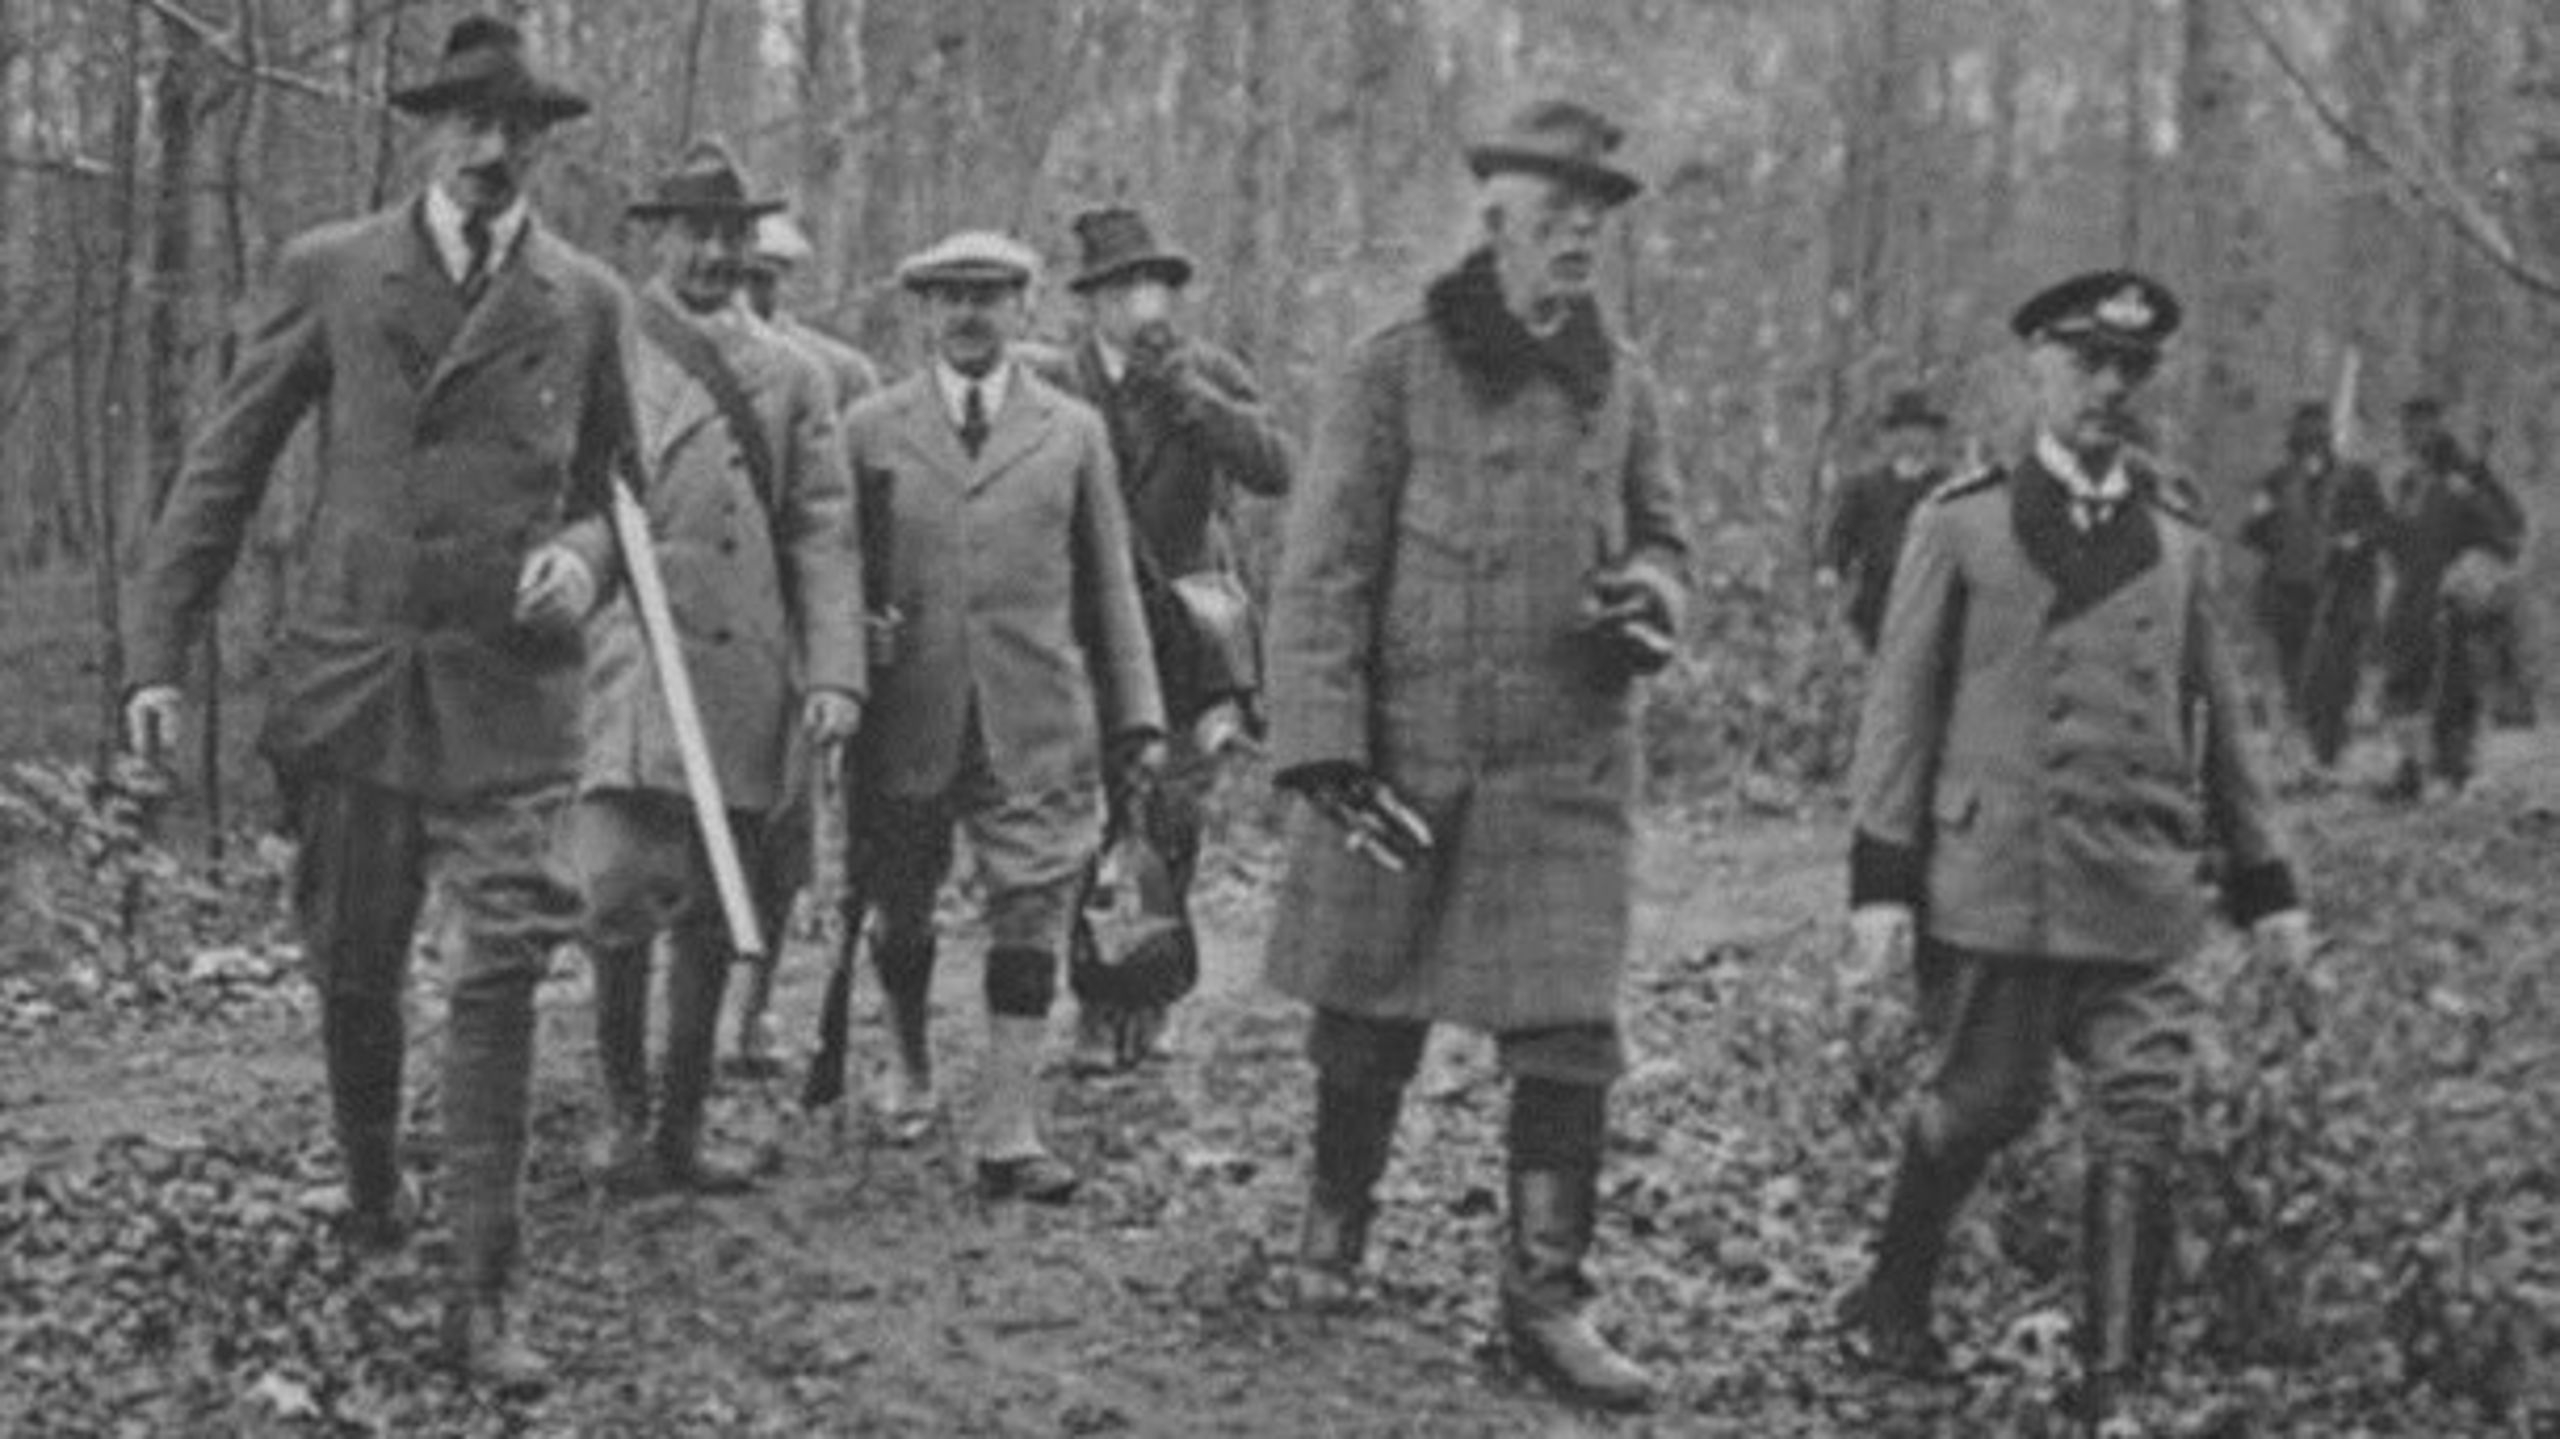 Magtelitens traditionelle jagture er afløst af løbeture ved Marienborg. Her ses kongelig skovridder Thorkild Swane Wielandt lede jagten for Danmarks Kong Christian X og Sveriges Kong Gustav V. 1924.